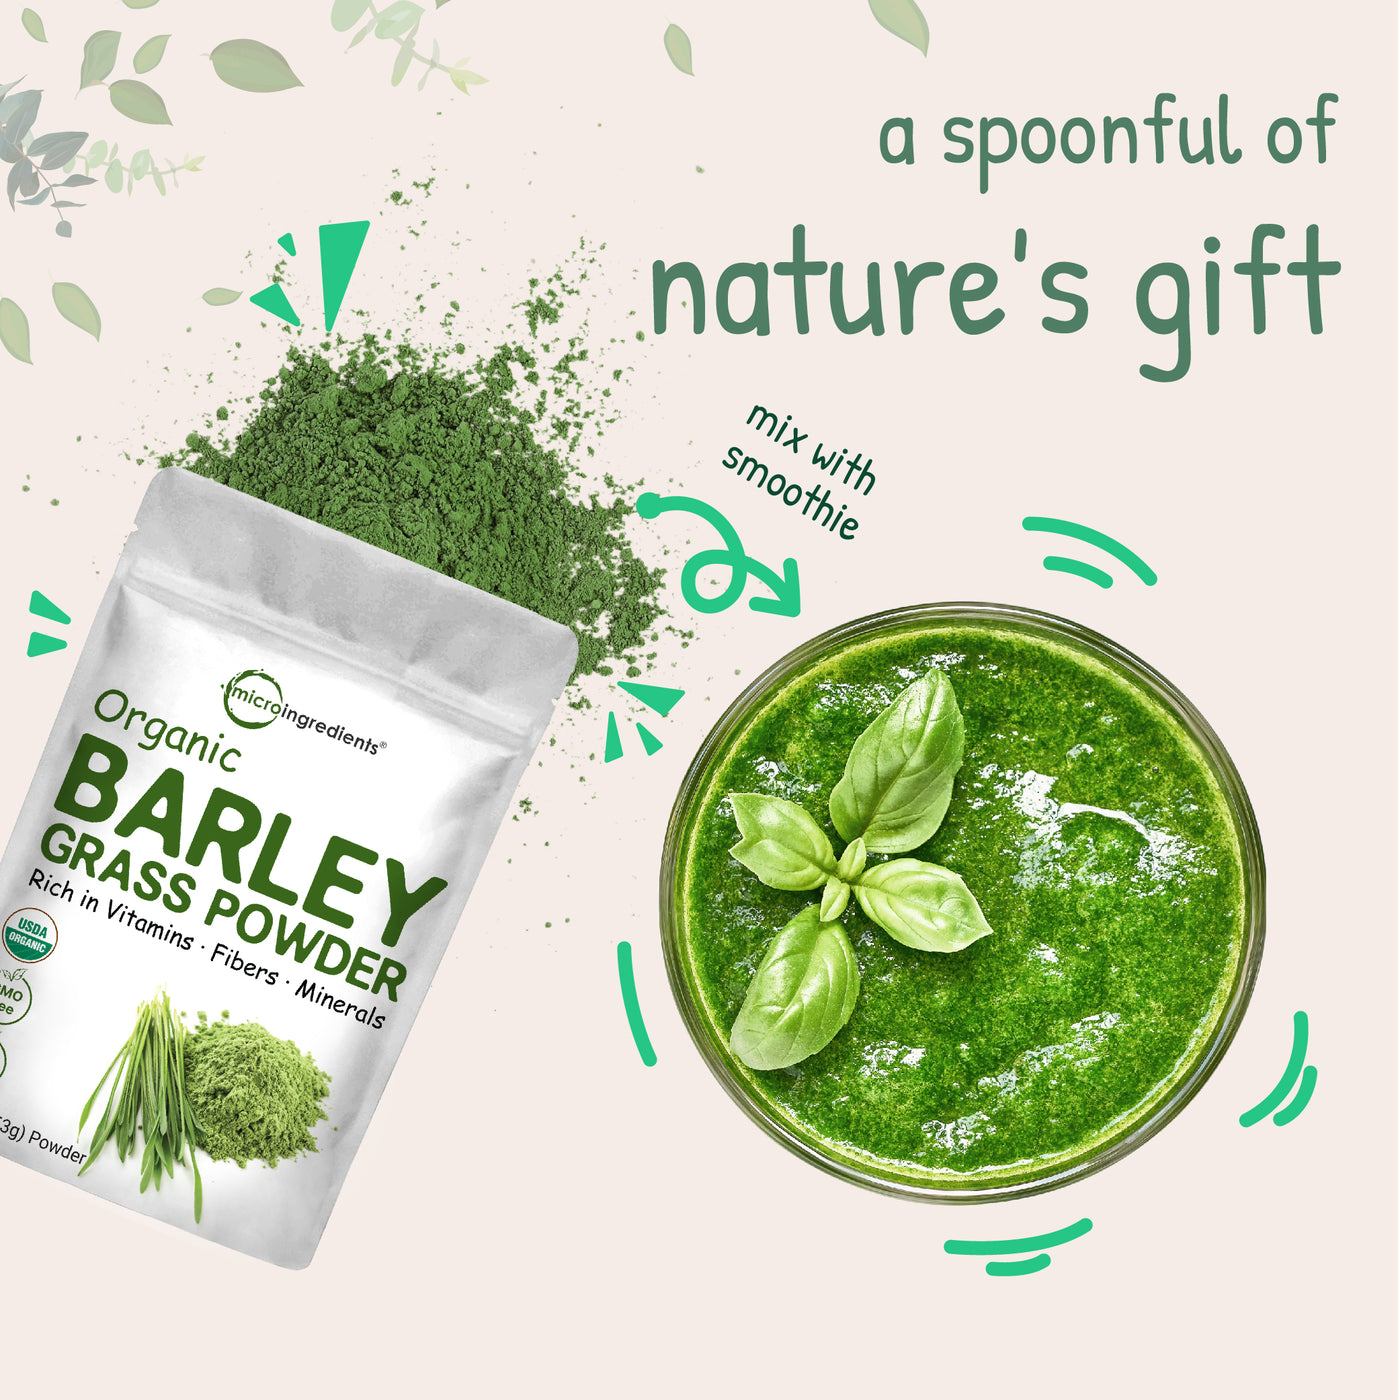 Organic Barley Grass Powder Nature's Gift